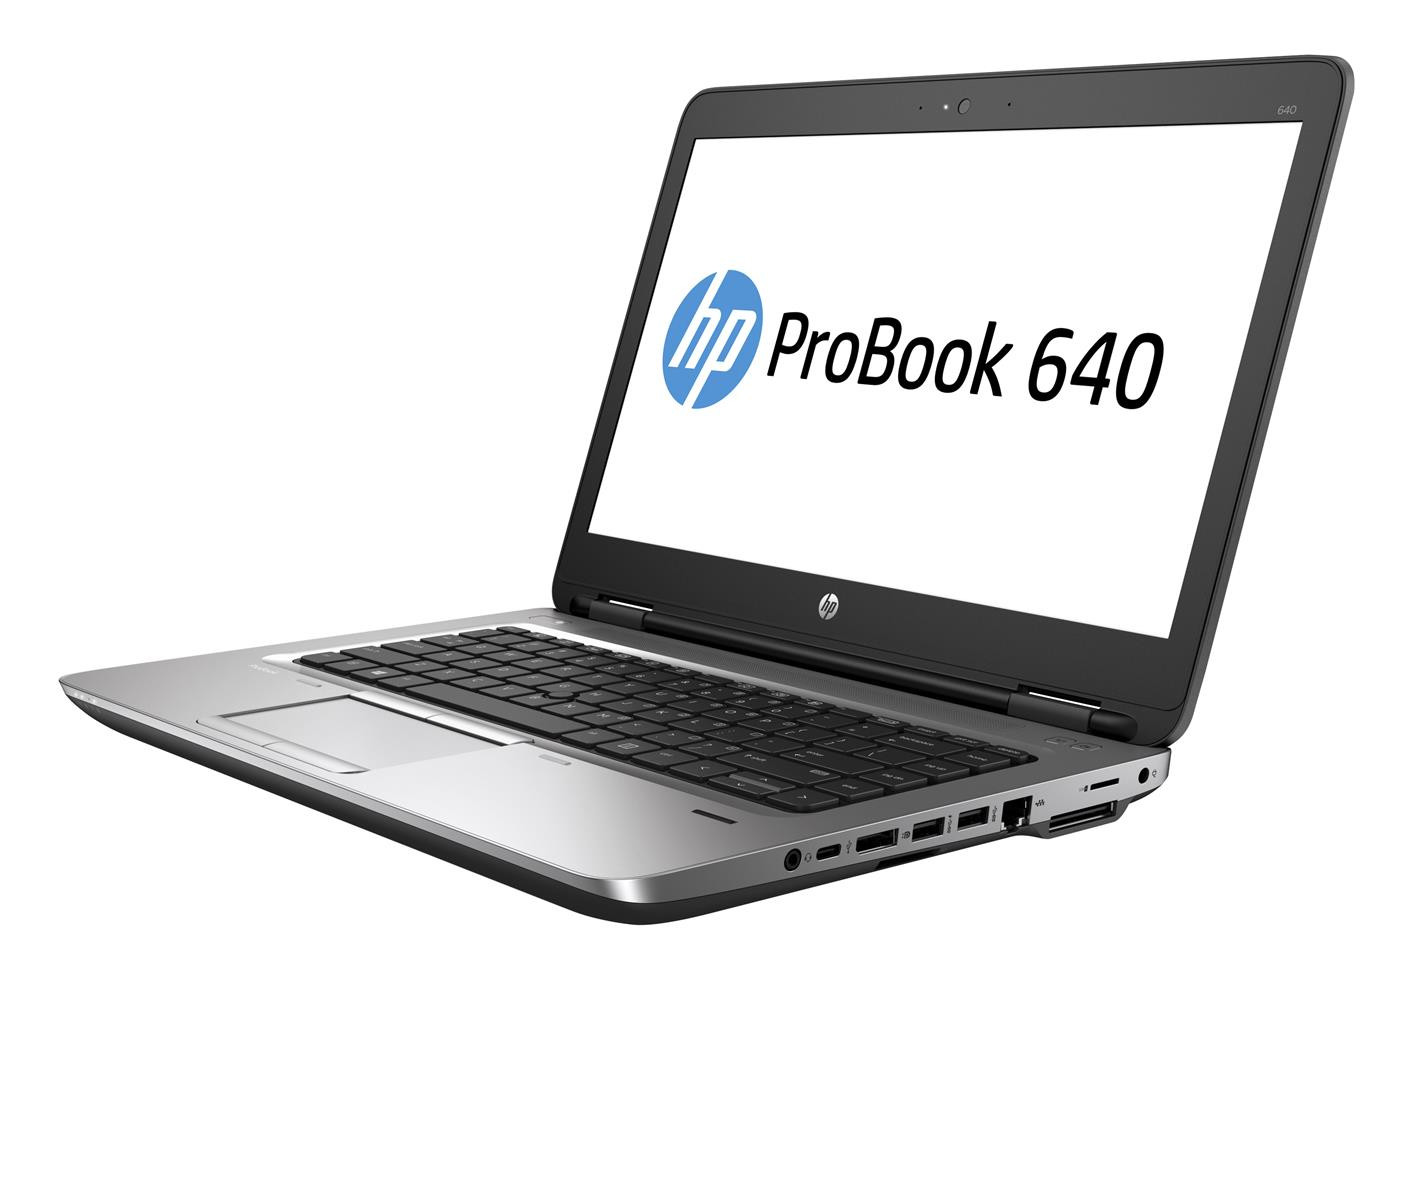 HP ProBook 640 G2 Intel Core i5-6200U 2.3GHz 8GB RAM 256GB SSD DVD Win 10 Pro